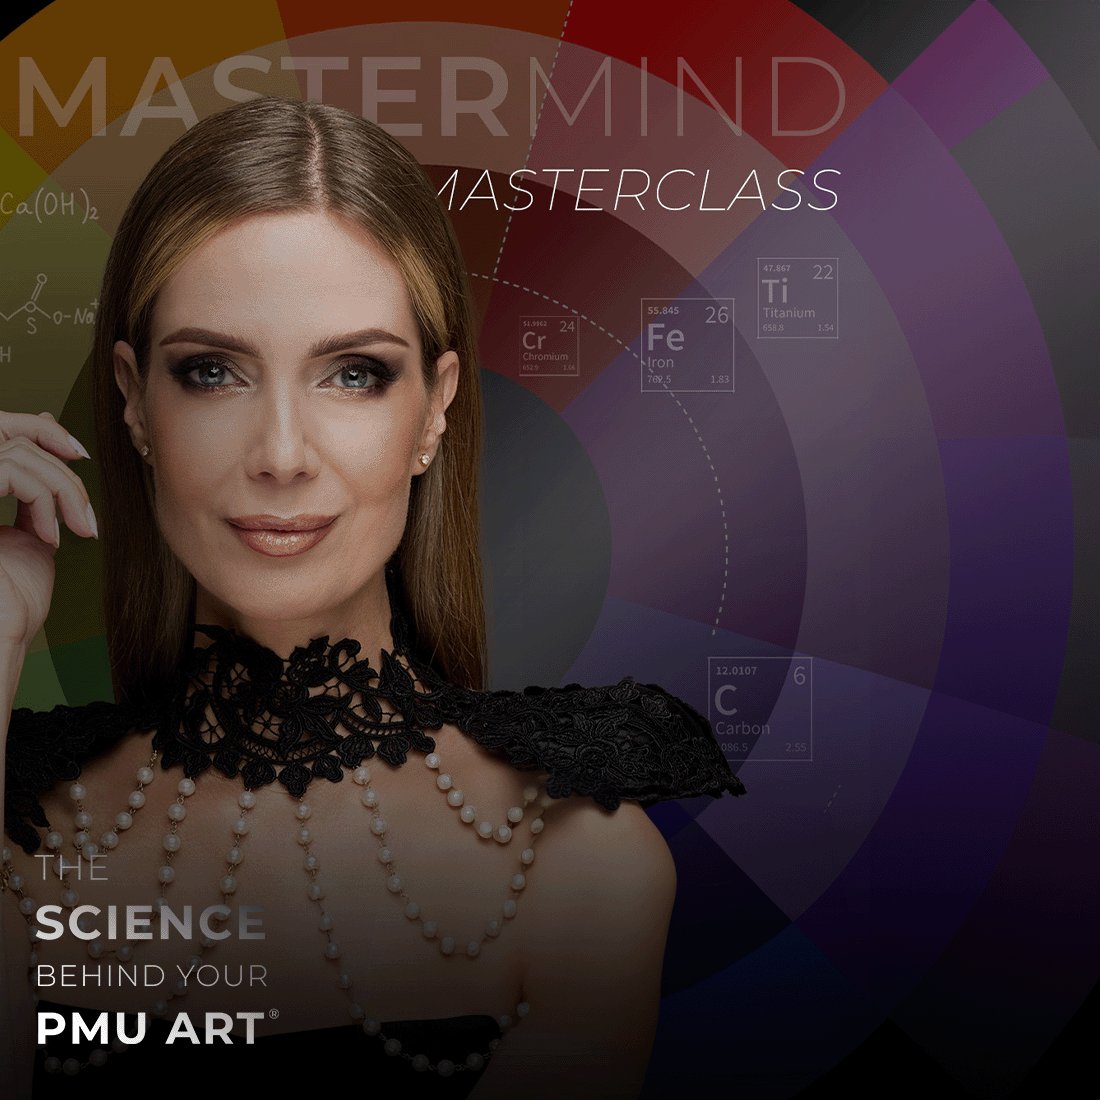 THE SCIENCE BEHIND YOUR PMU ART Wetenschap achter Permanente Makeup